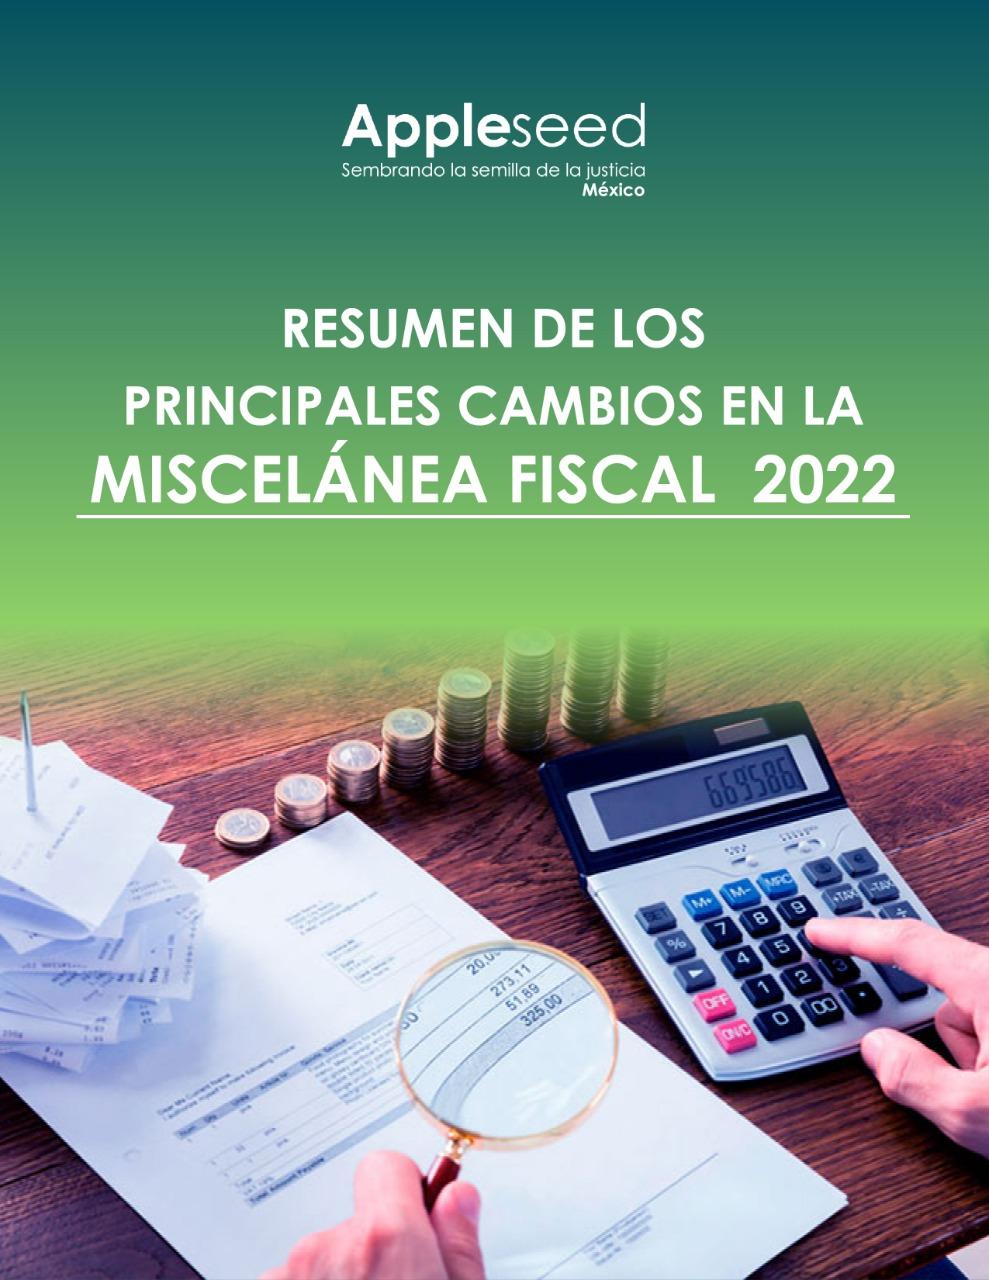 Resumen de los principales cambios en la Miscelánea Fiscal 2022